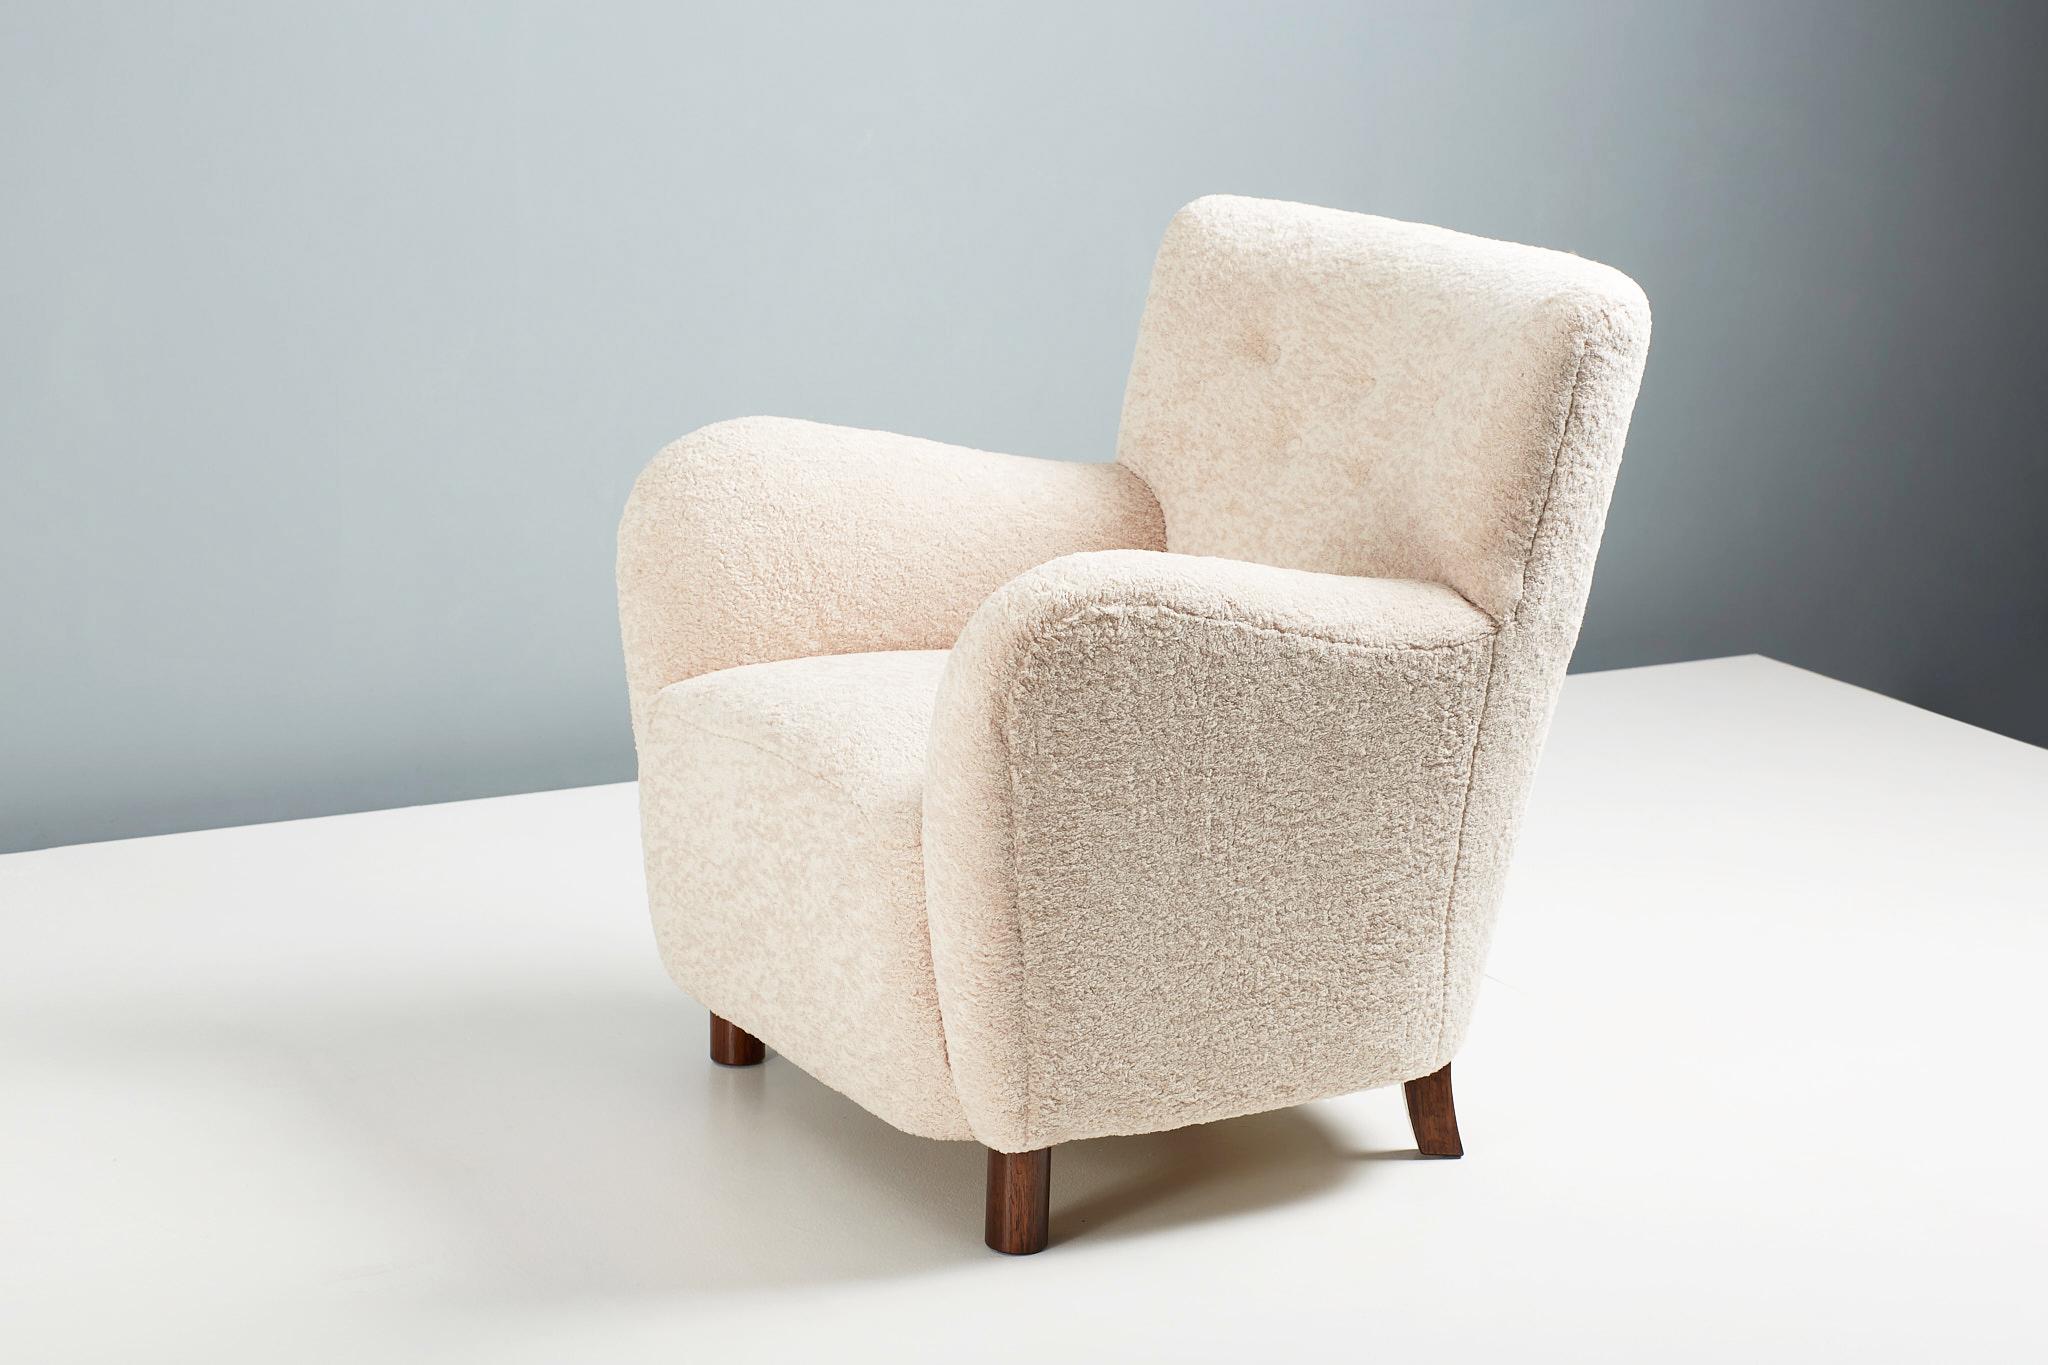 Dagmar design - Sessel Modell 54.

Ein maßgefertigter Loungesessel, der in unseren Werkstätten in London unter Verwendung hochwertigster Materialien entwickelt und handgefertigt wird. Der 54er Stuhl ist auf Bestellung in einer Reihe von